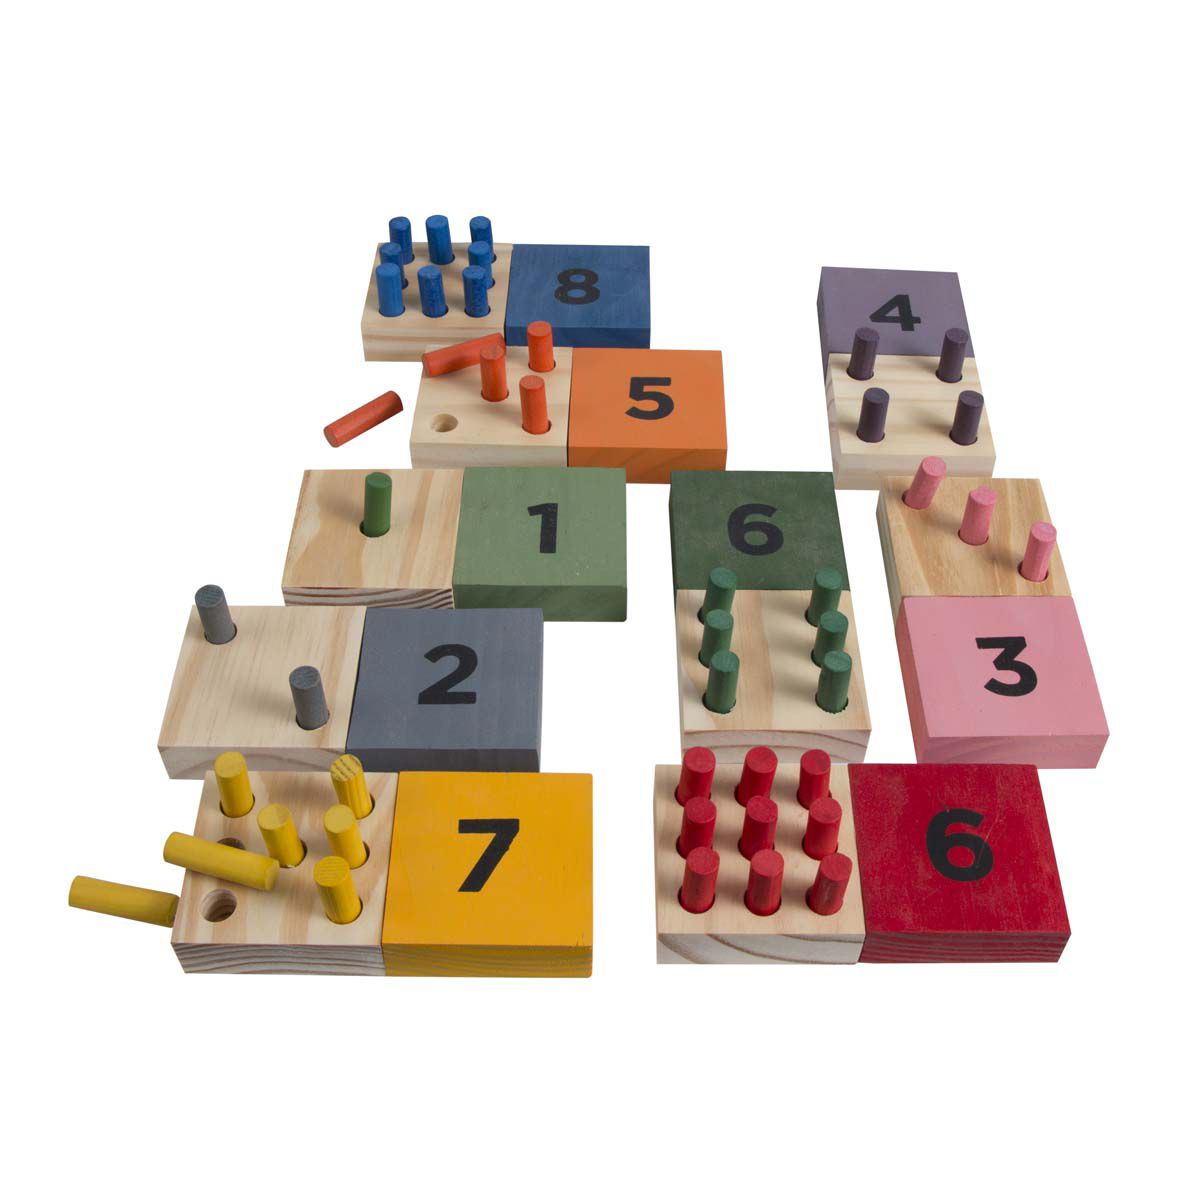 De 4 a 5 anos - Brinquedos Educativos e Pedagógicos - Gemini Jogos Criativos